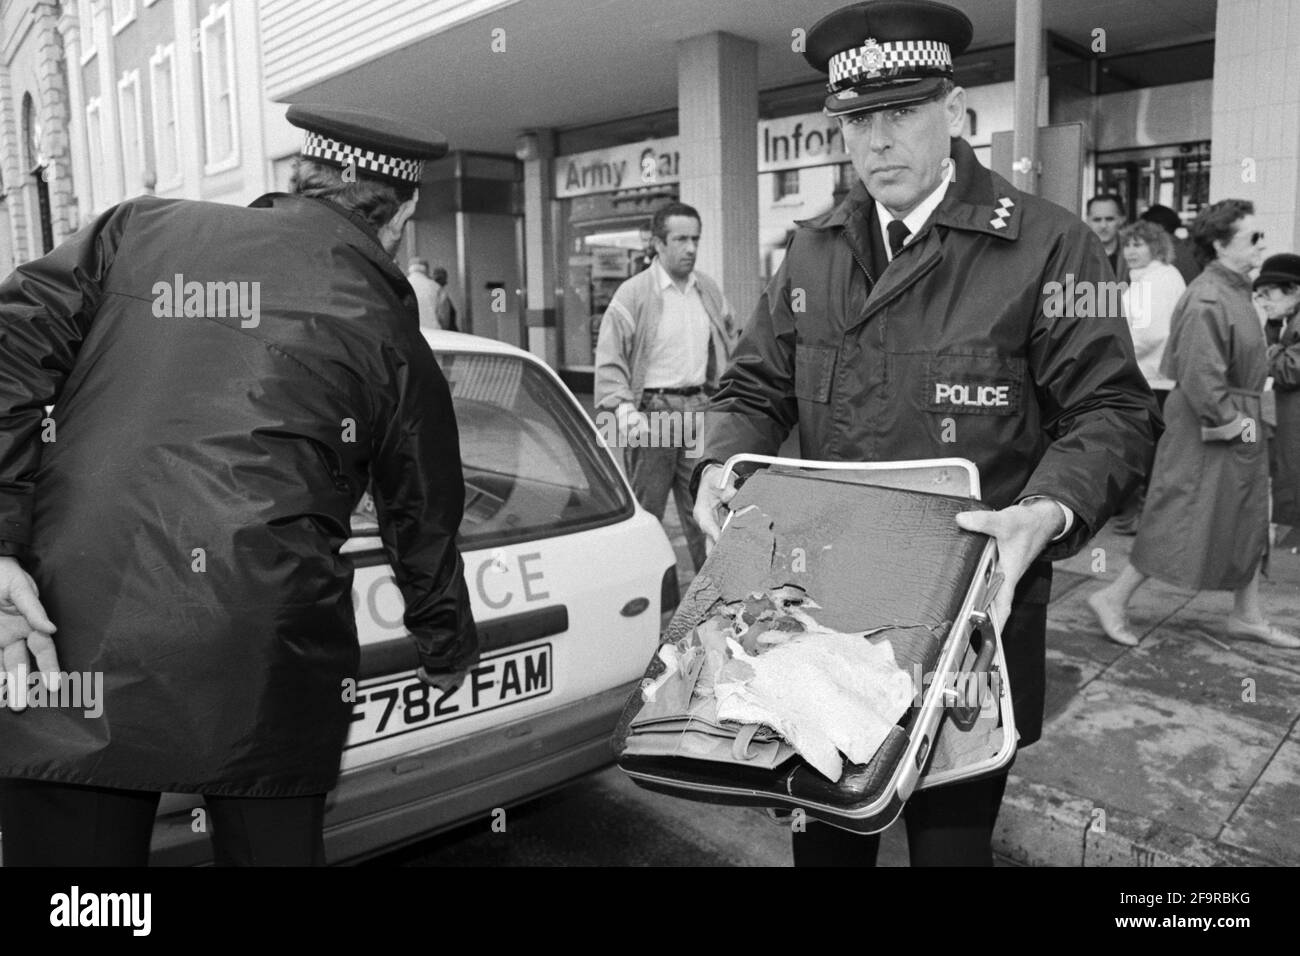 La police retire une serviette suspecte laissée à l'extérieur des bureaux de recrutement de l'Armée de terre à Salisbury en 1990. La police était toujours en état d'alerte pour les colis suspects car l'IRA effectuait encore une campagne de bombardement sur le continent dans les années 1990. Banque D'Images